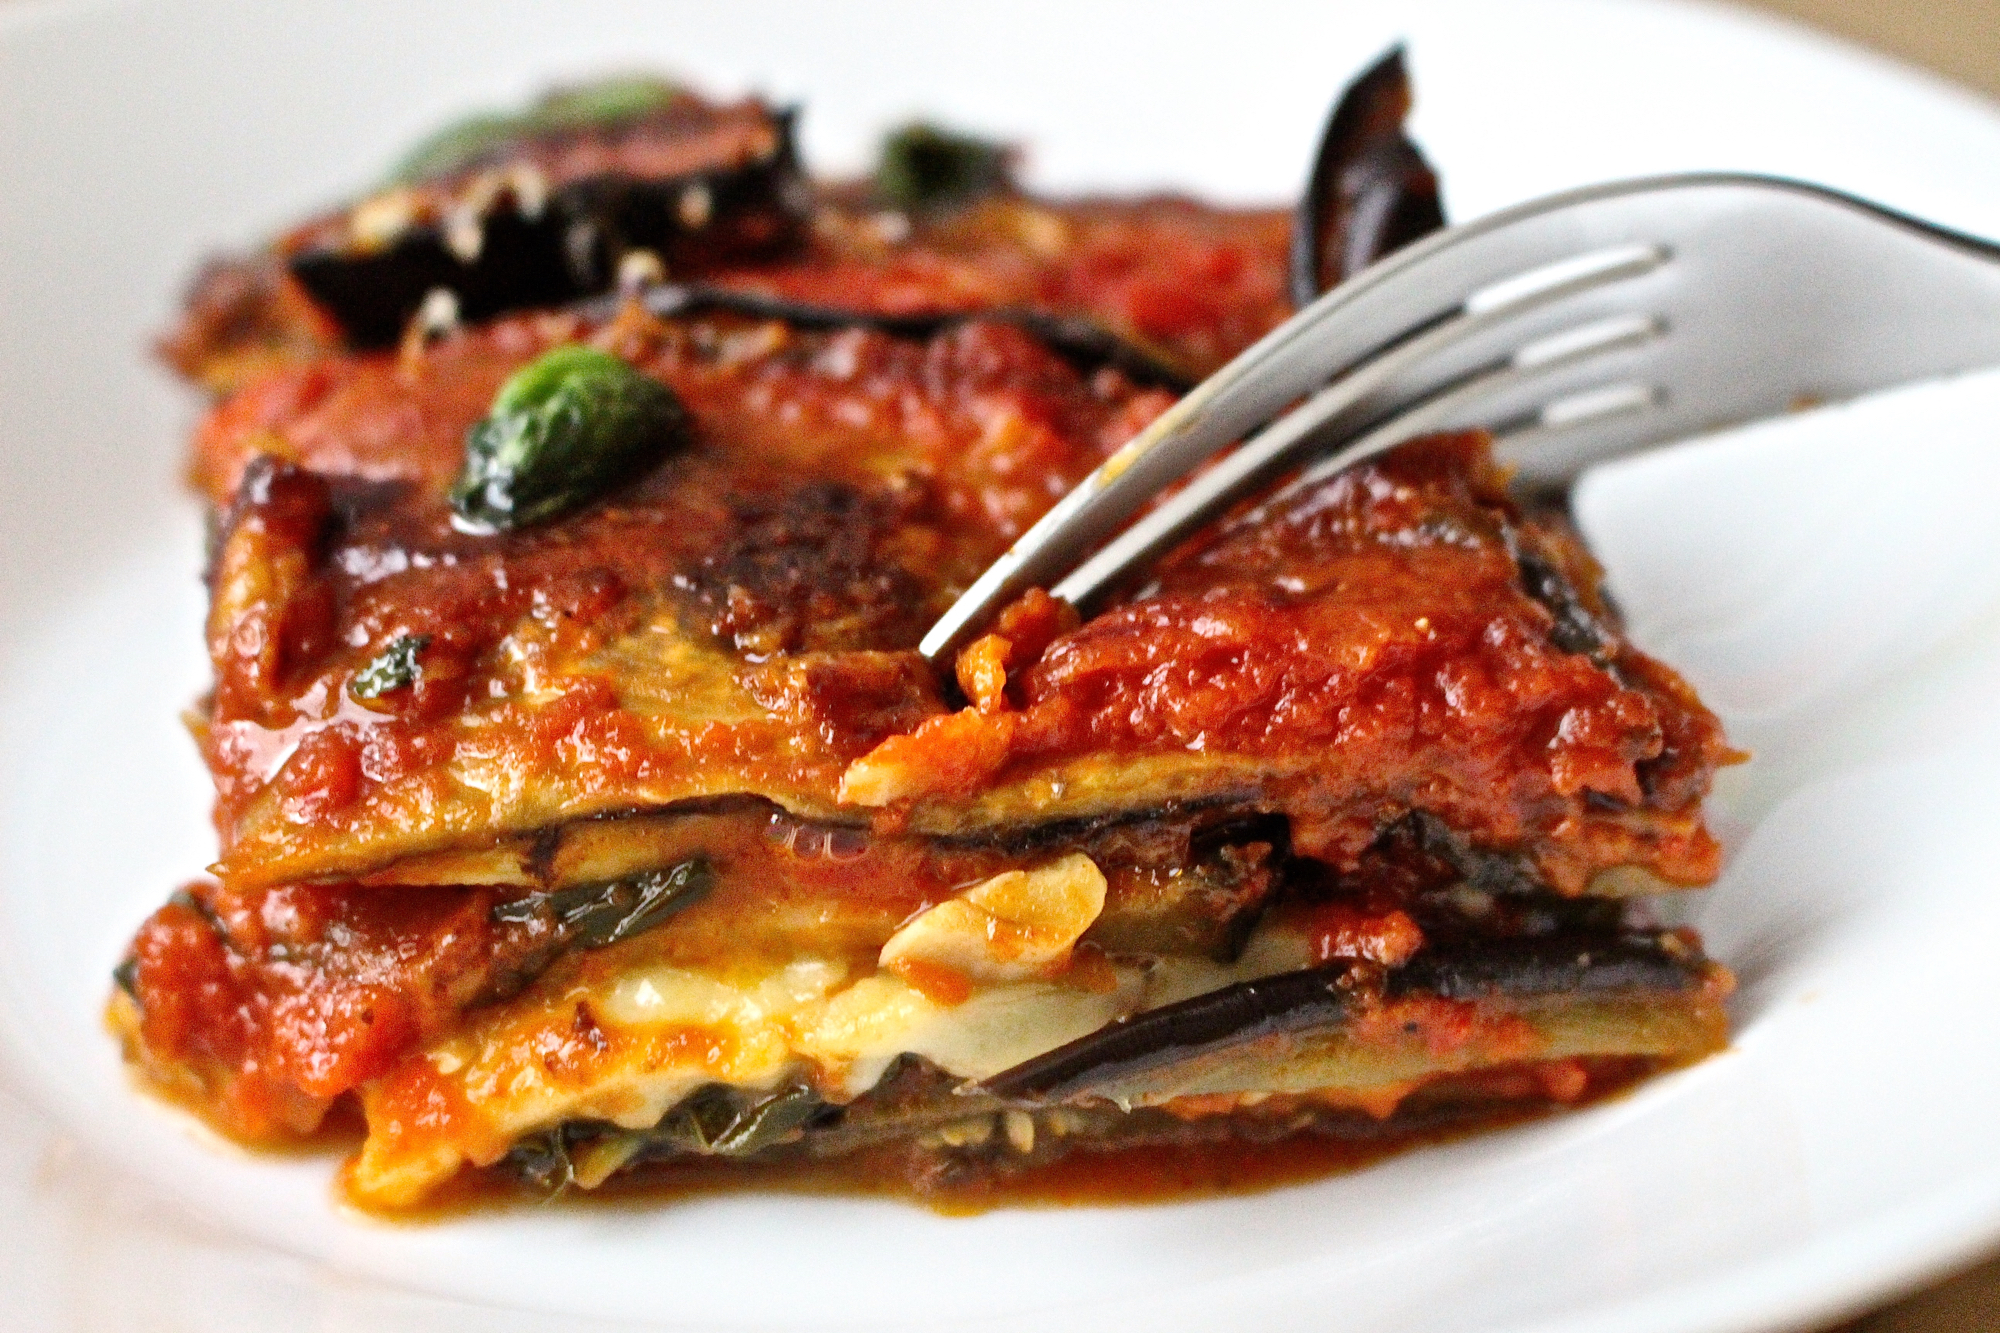 Eggplant parmesan recipe | vegetarian | foodcraftz.com
